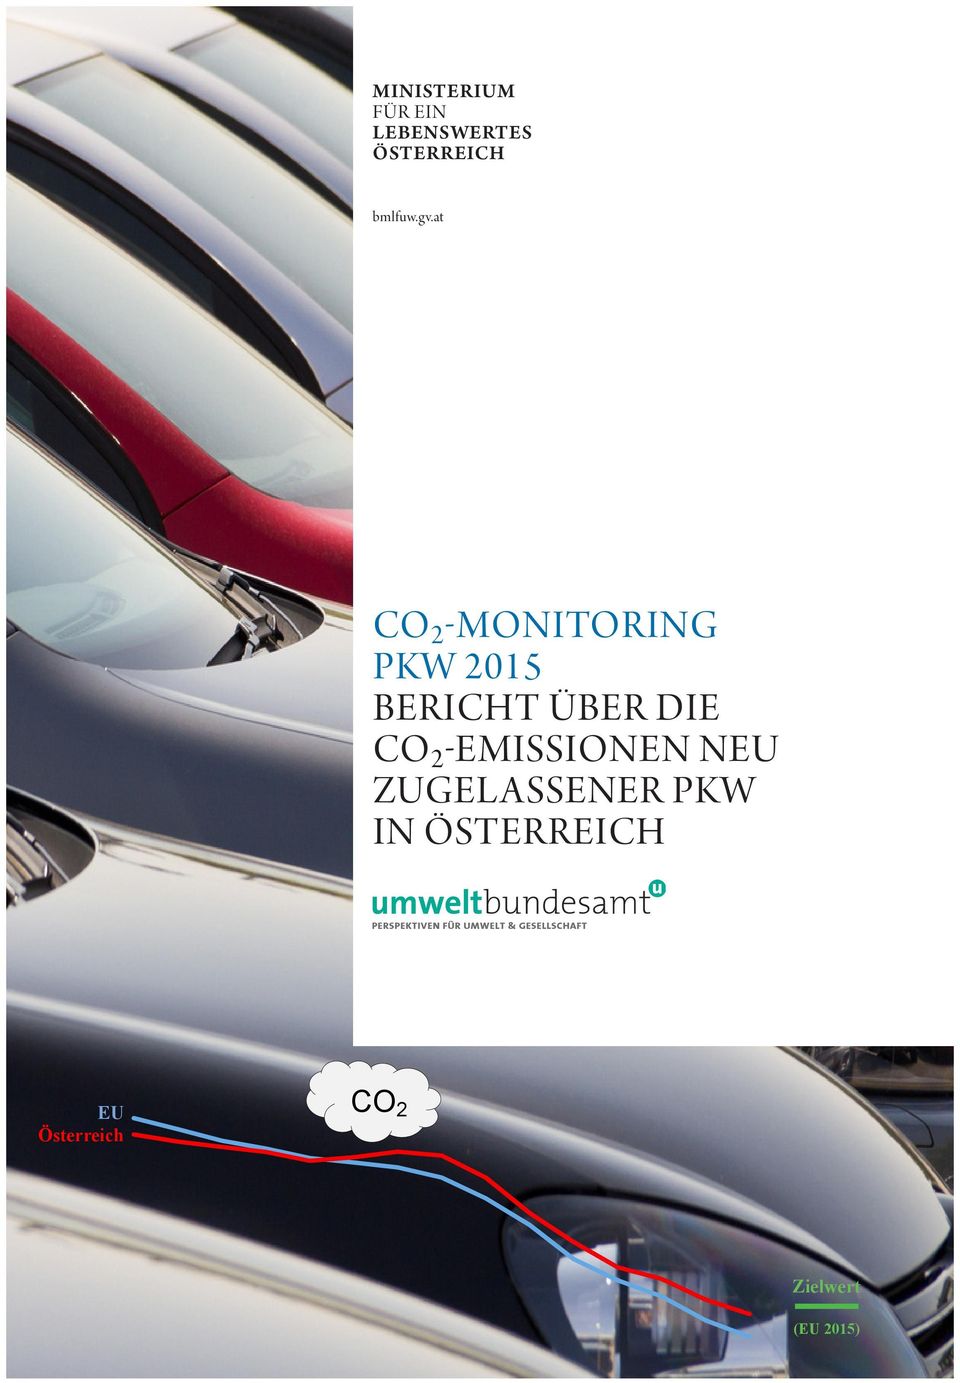 at CO 2 -MONITORING PKW 2015 BERICHT ÜBER DIE